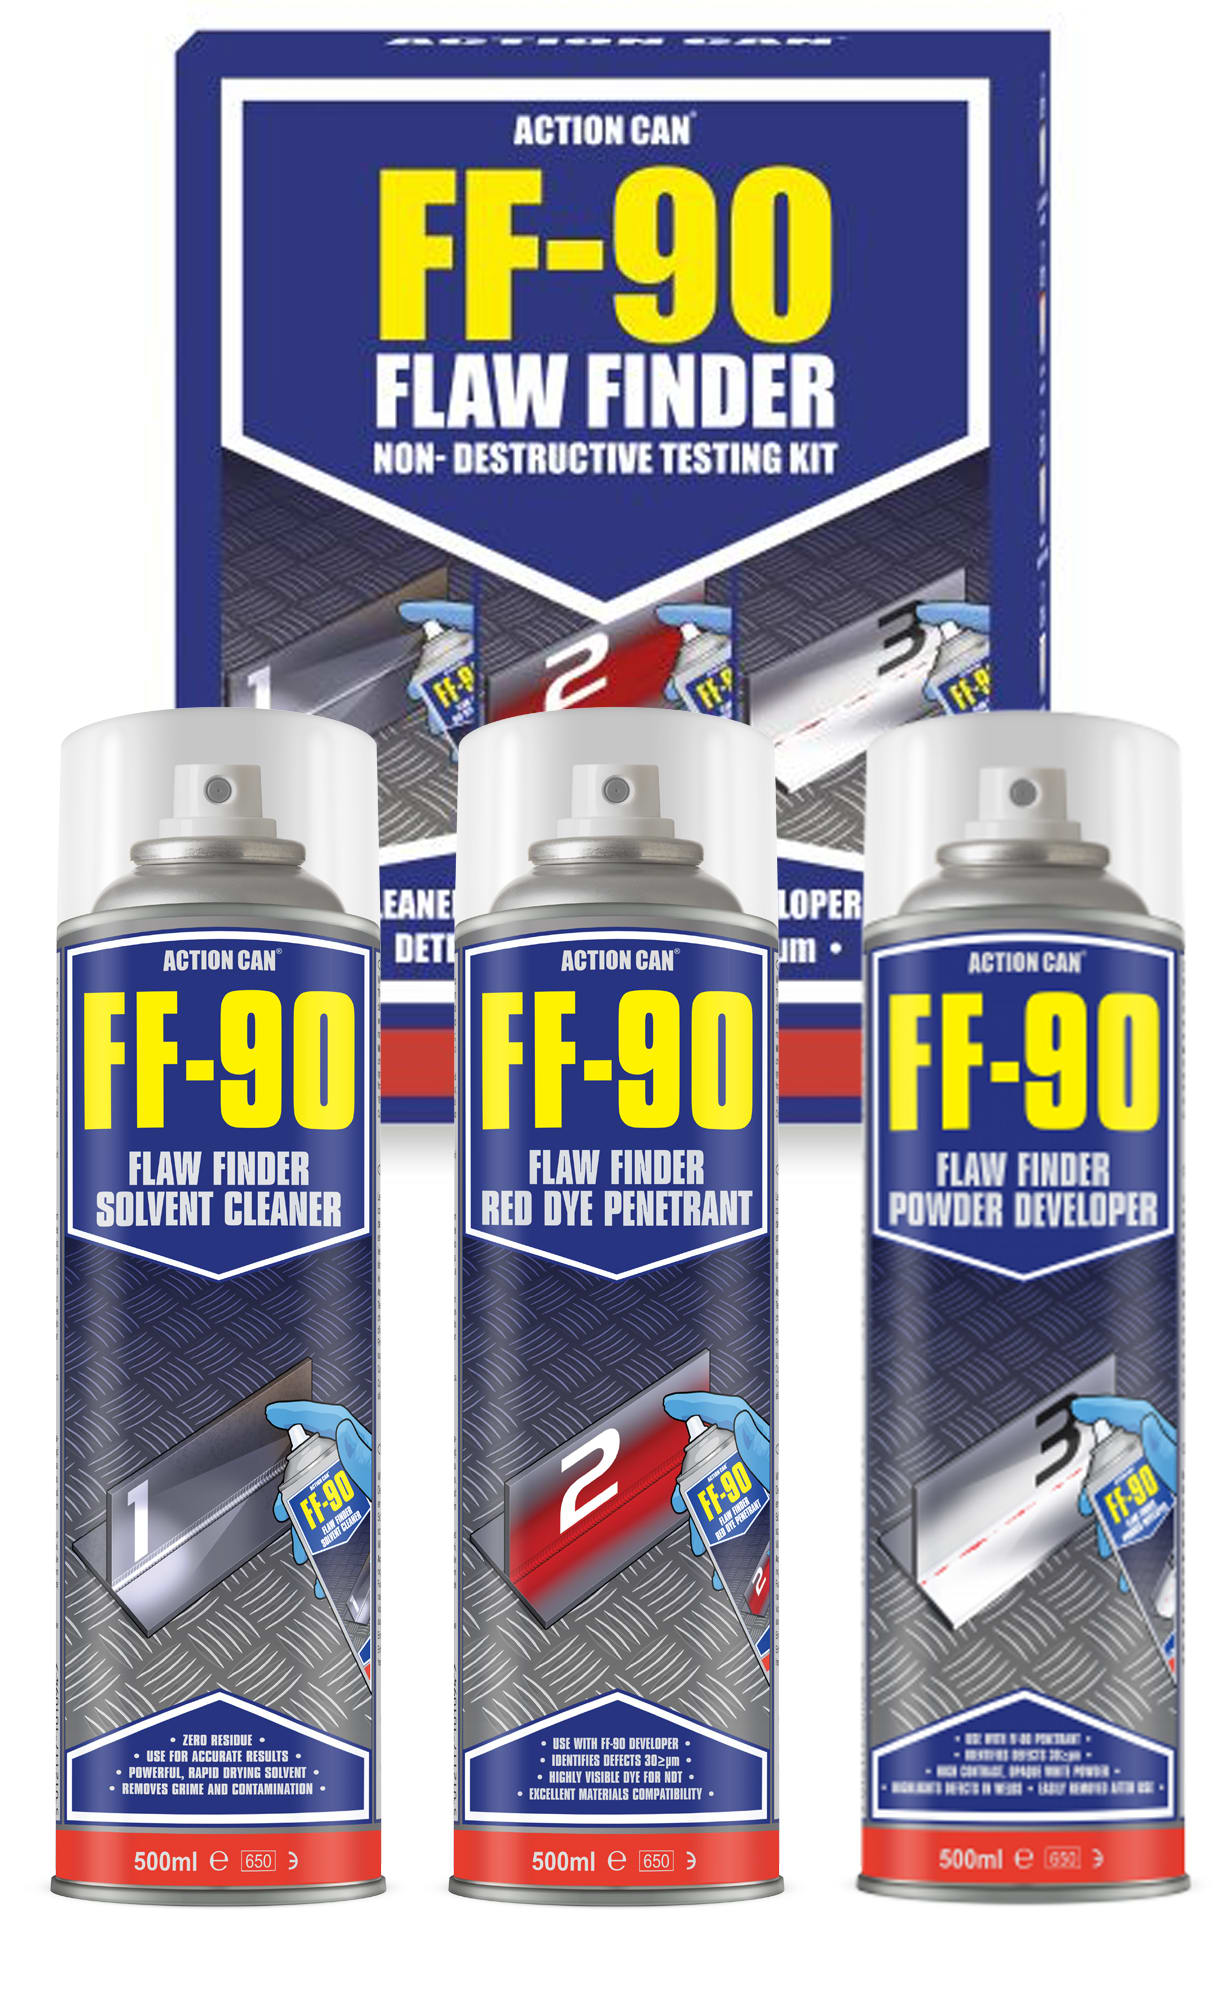 FF-90 Flaw Finder NDT Kit